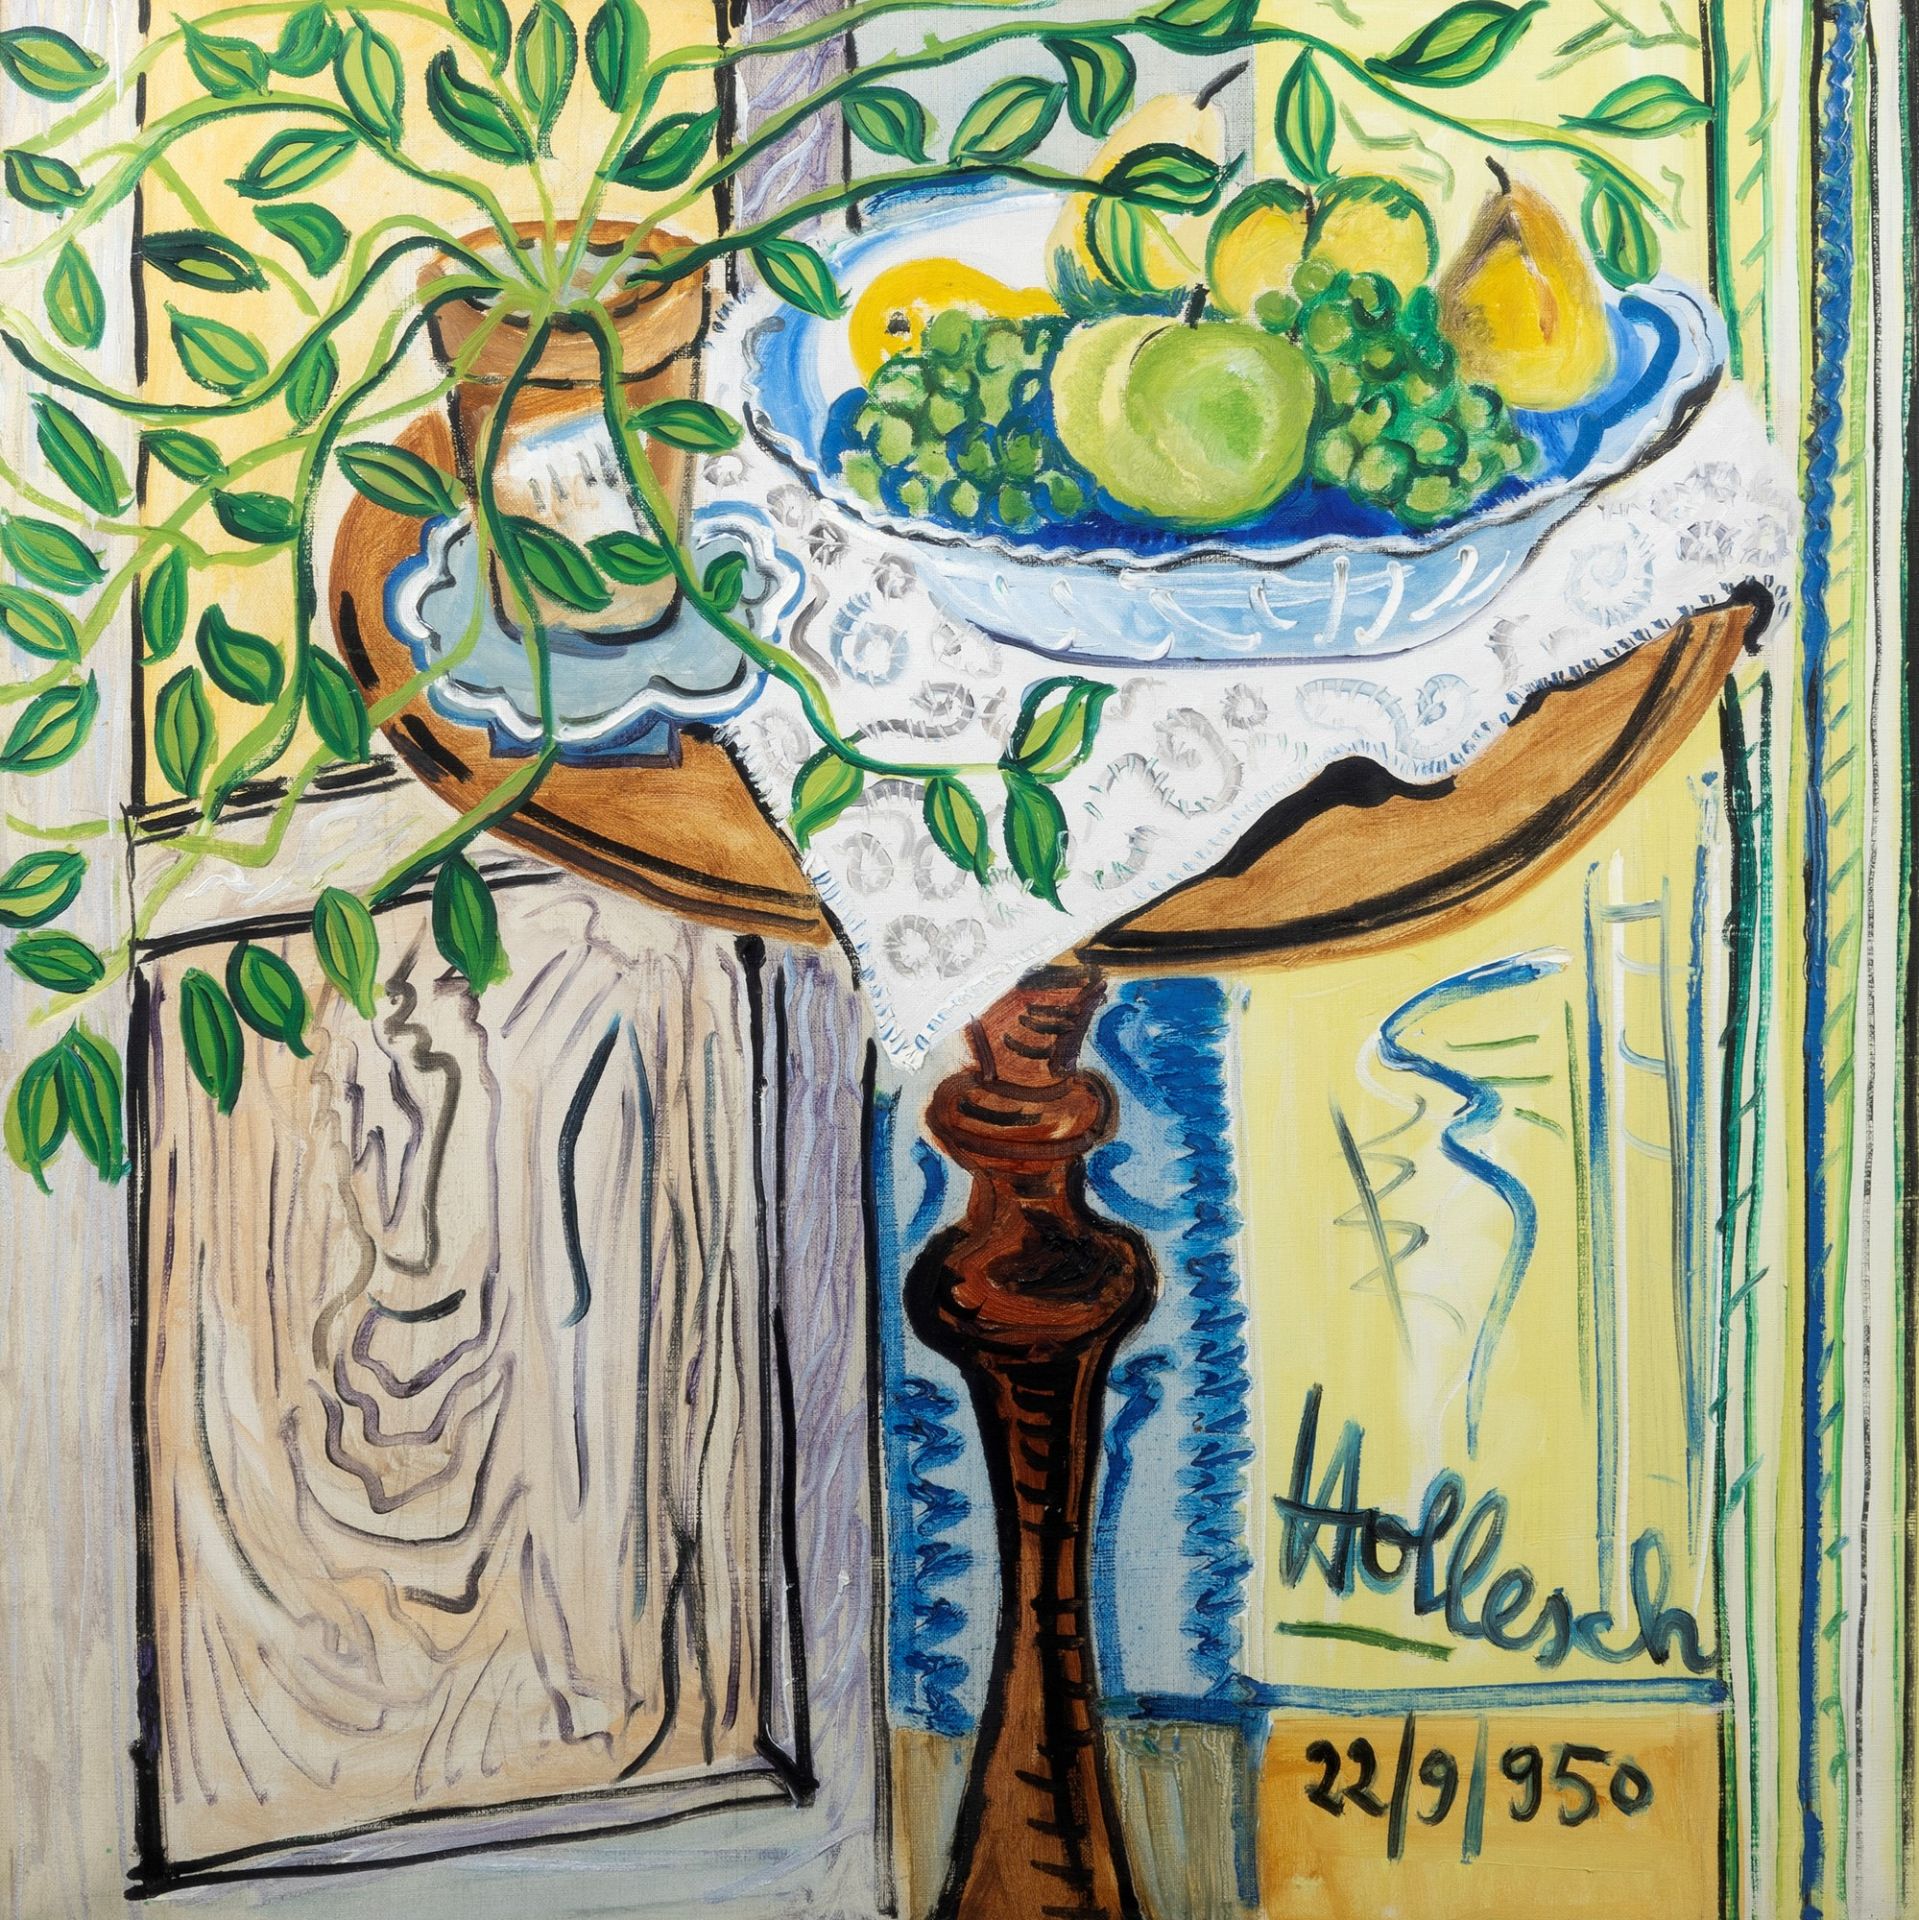 Carlo Hollesch (Pola 1926-Venezia 1978) - "Fruit on the Coffee Table", 1950